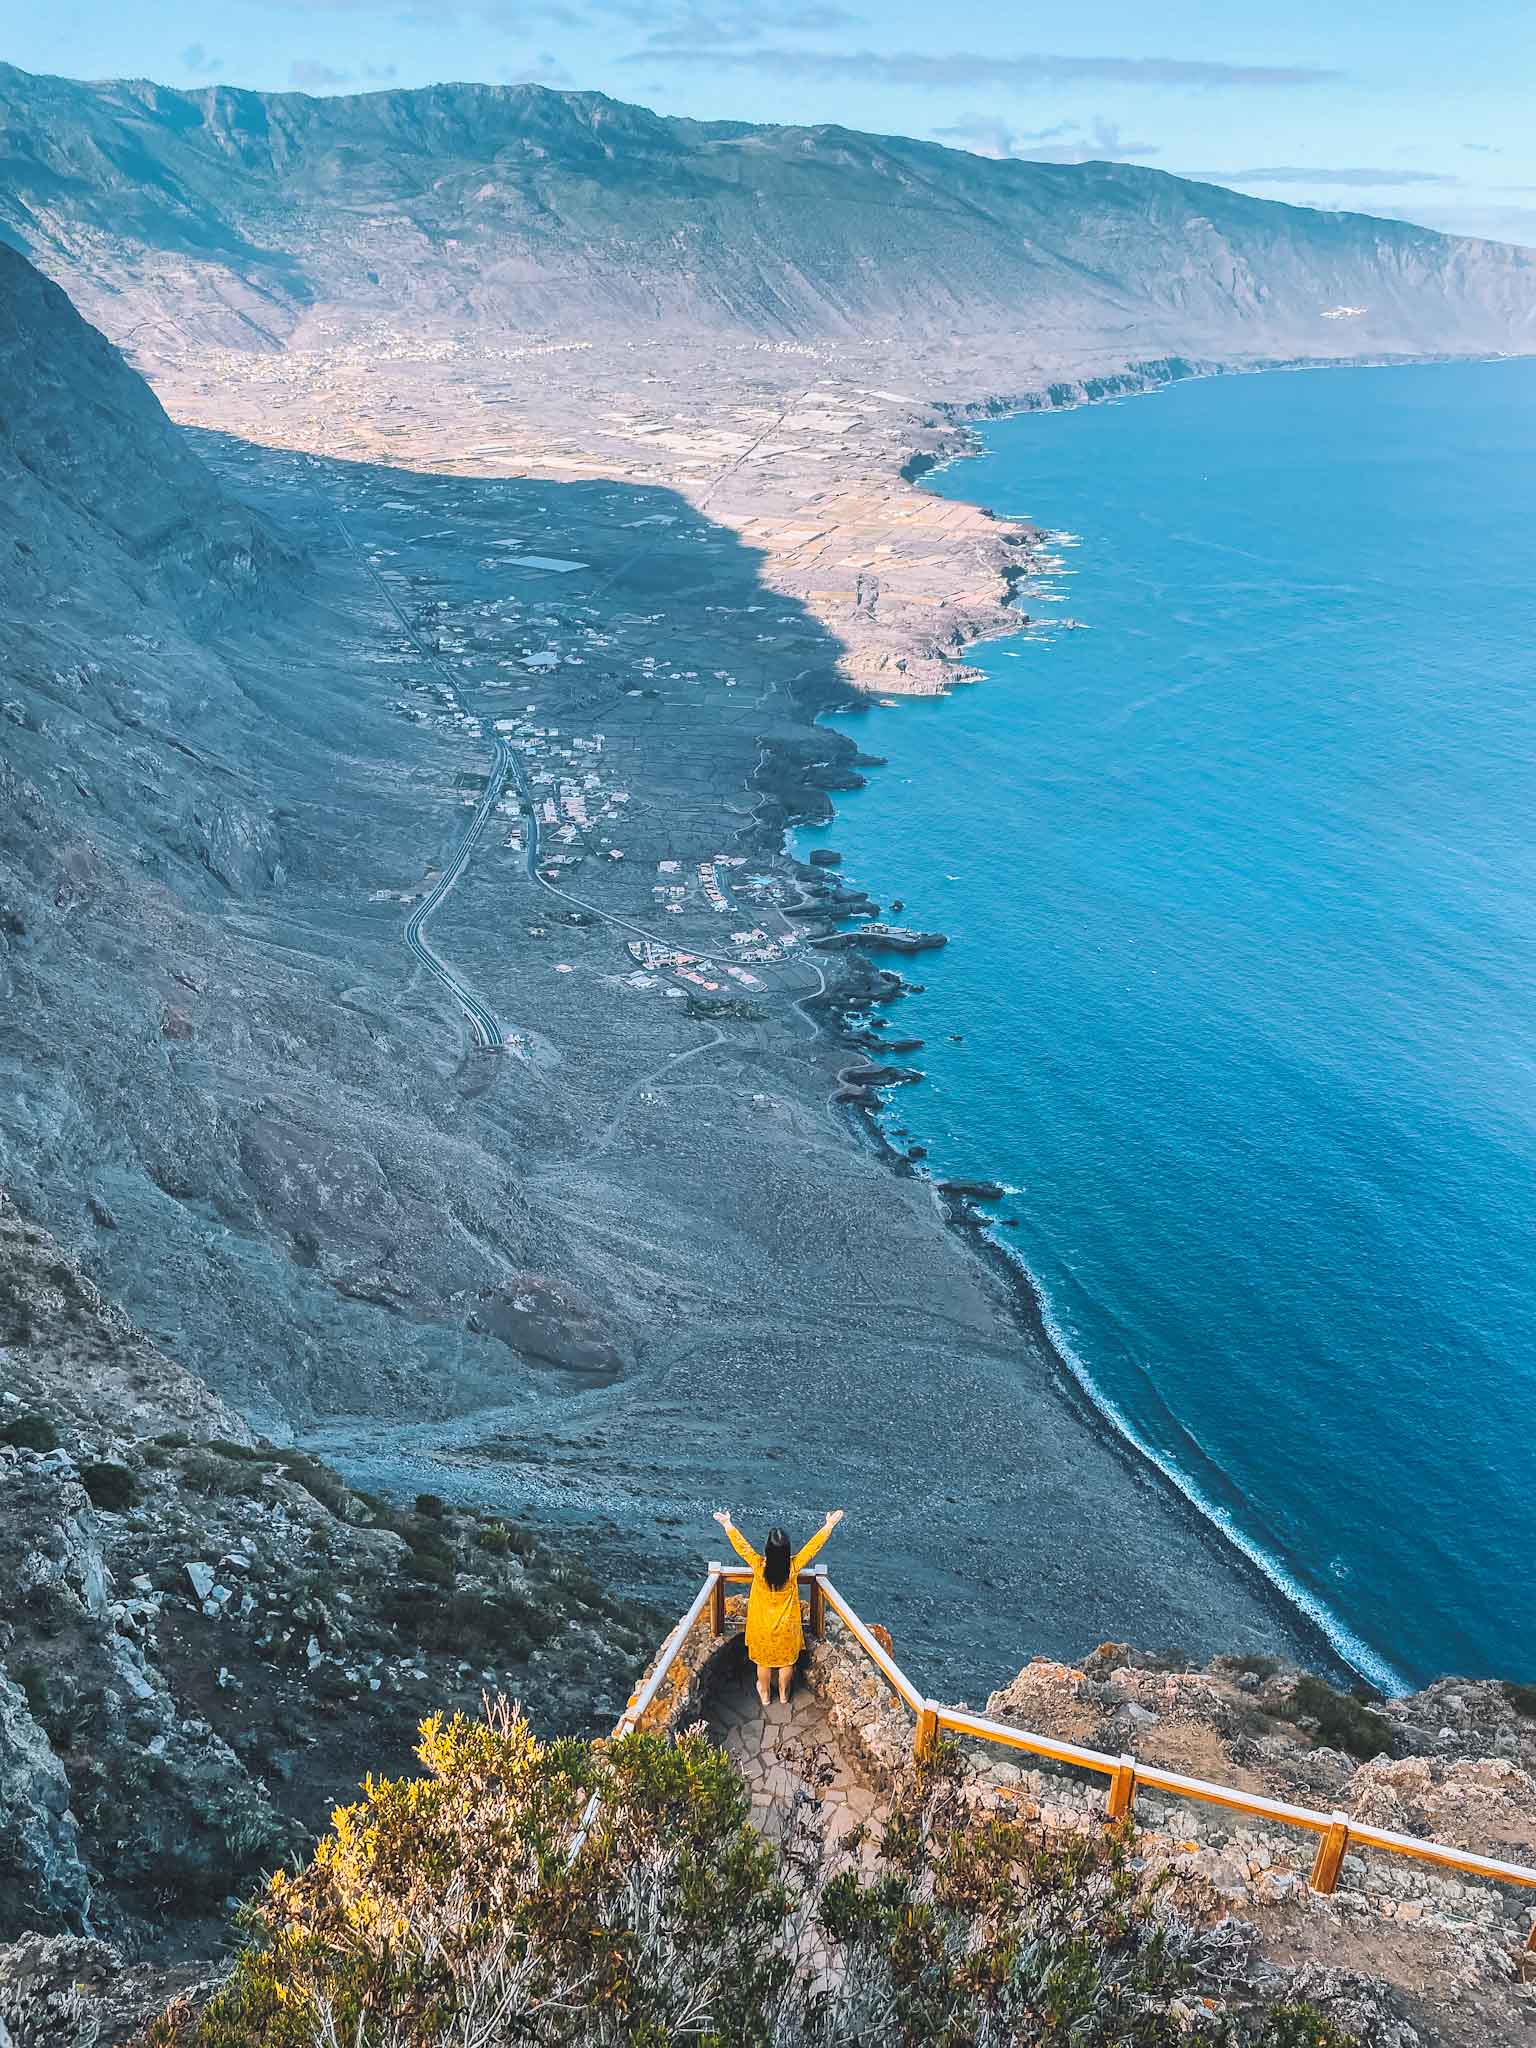 Best Instagram spots in El Hierro Canary Islands - Mirador de La Peña